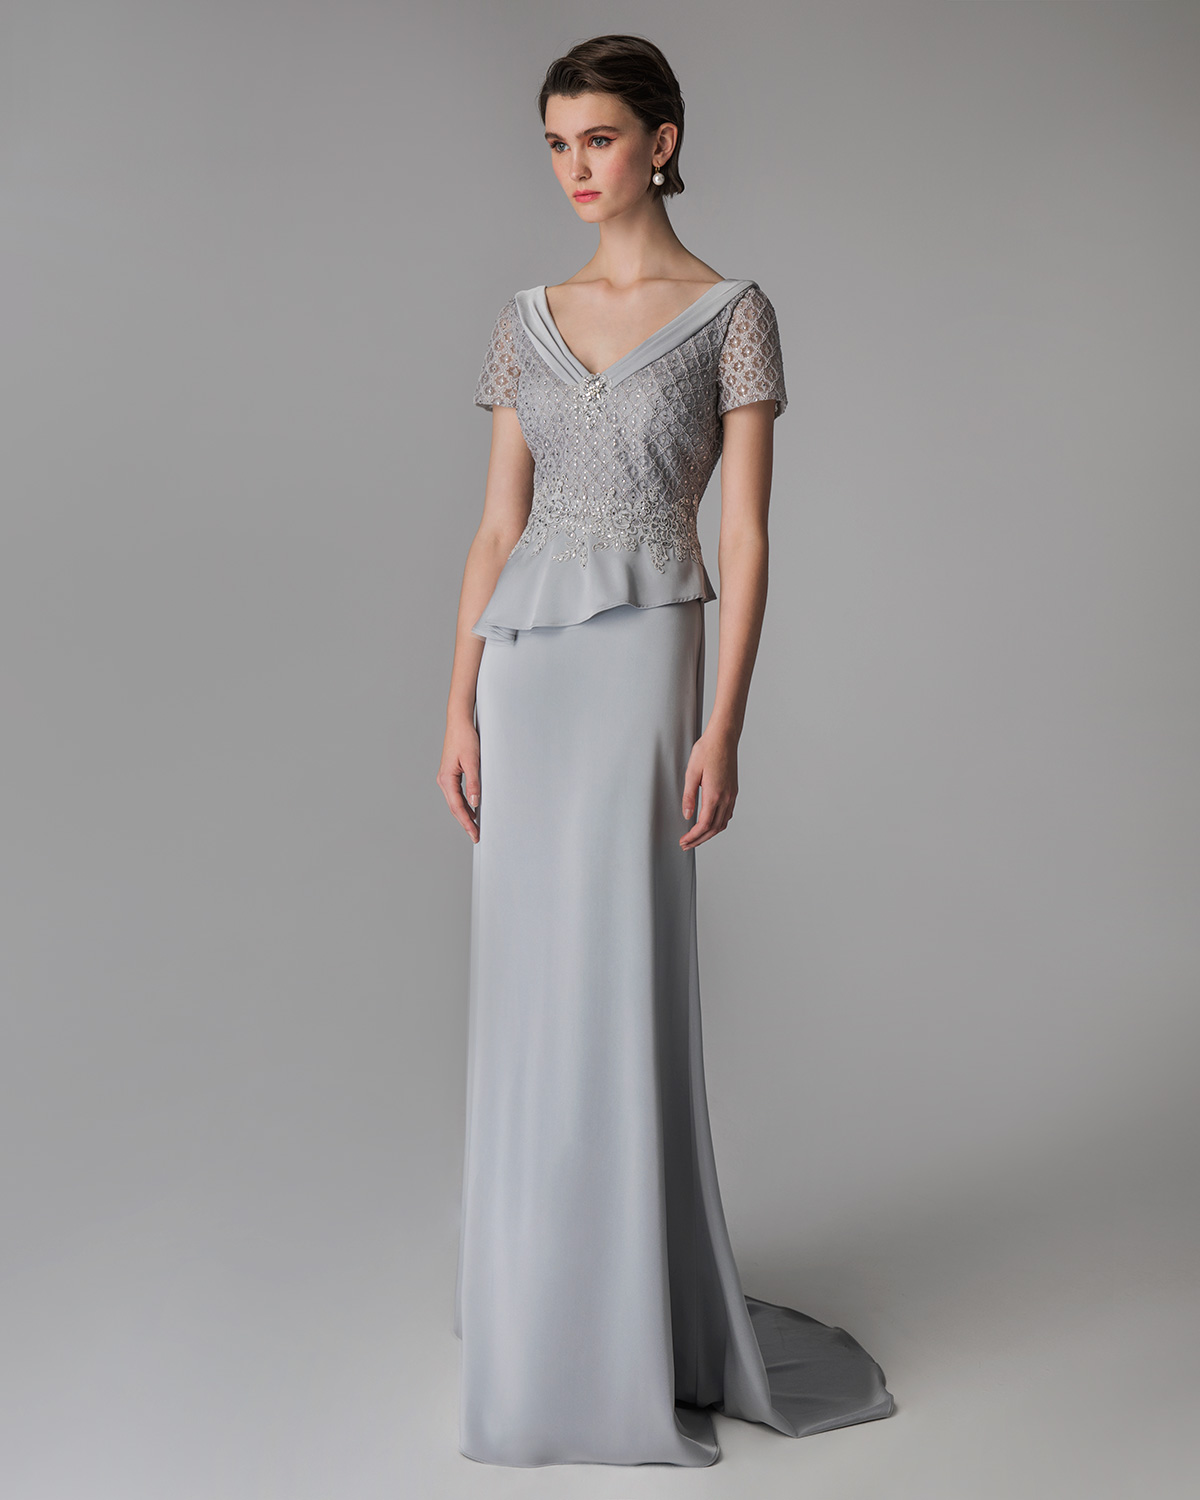 Κλασικά Φορέματα / Κλασικό φόρεμα μακρύ για γάμο με κέντημα και κοντά μανίκια